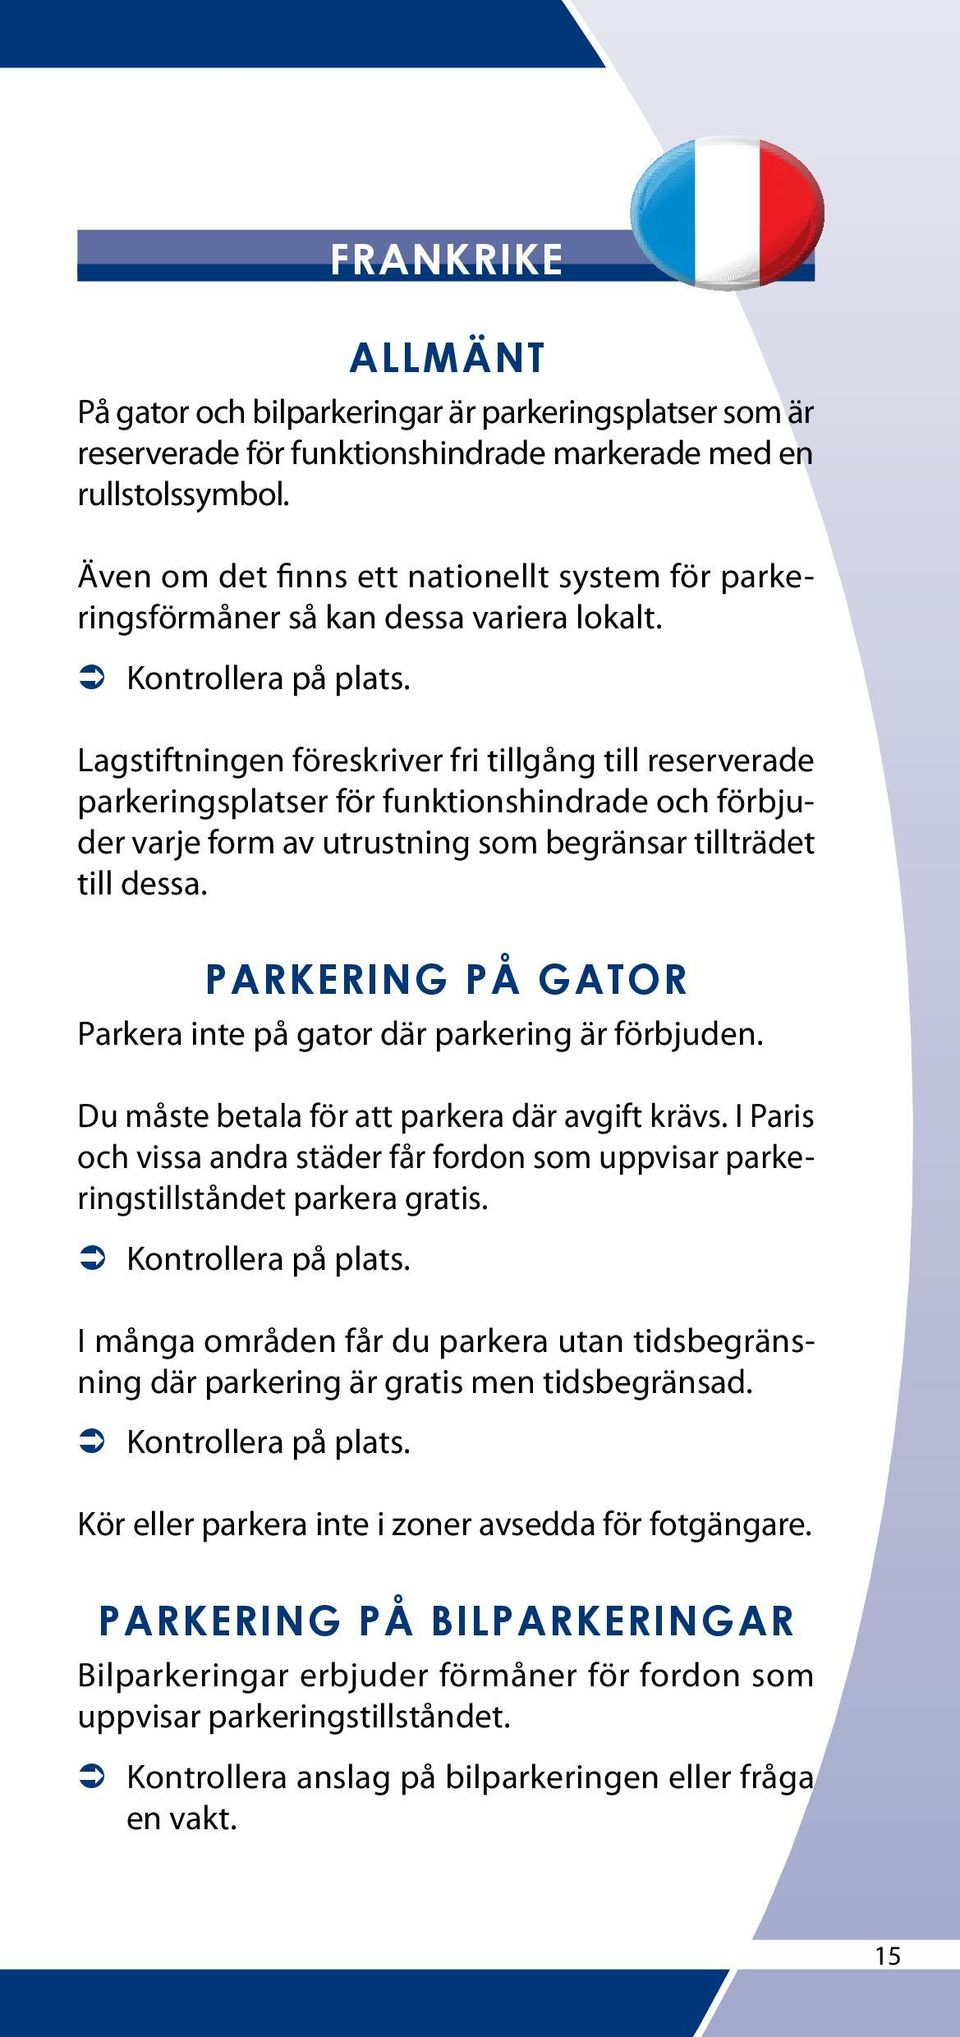 Parkera inte på gator där parkering är förbjuden. Du måste betala för att parkera där avgift krävs. I Paris och vissa andra städer får fordon som uppvisar parkeringstillståndet parkera gratis.